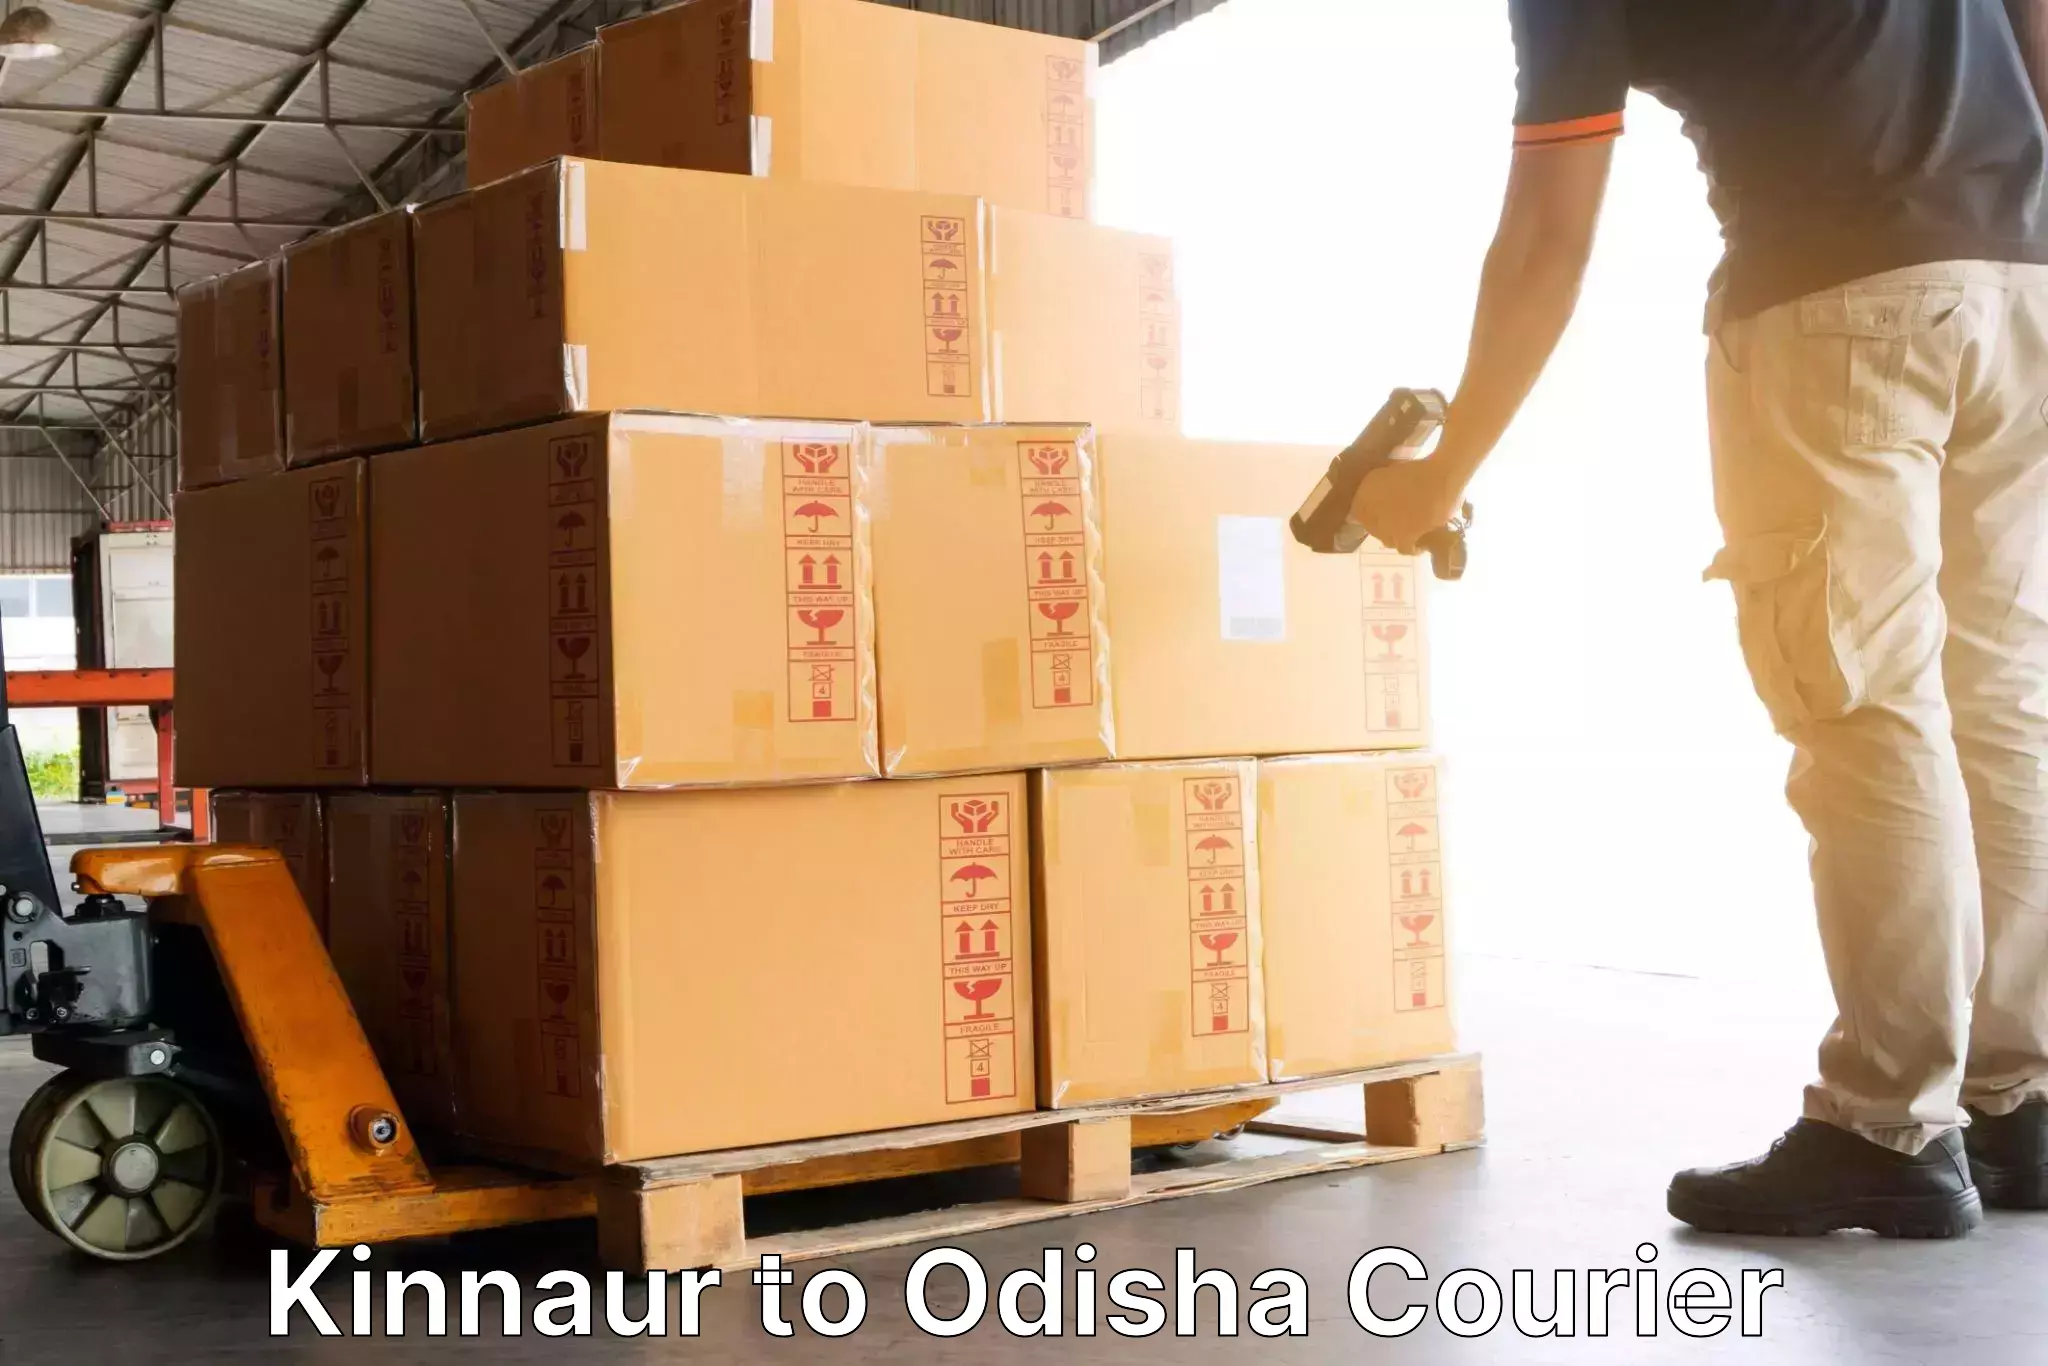 Supply chain efficiency Kinnaur to Parlakhemundi